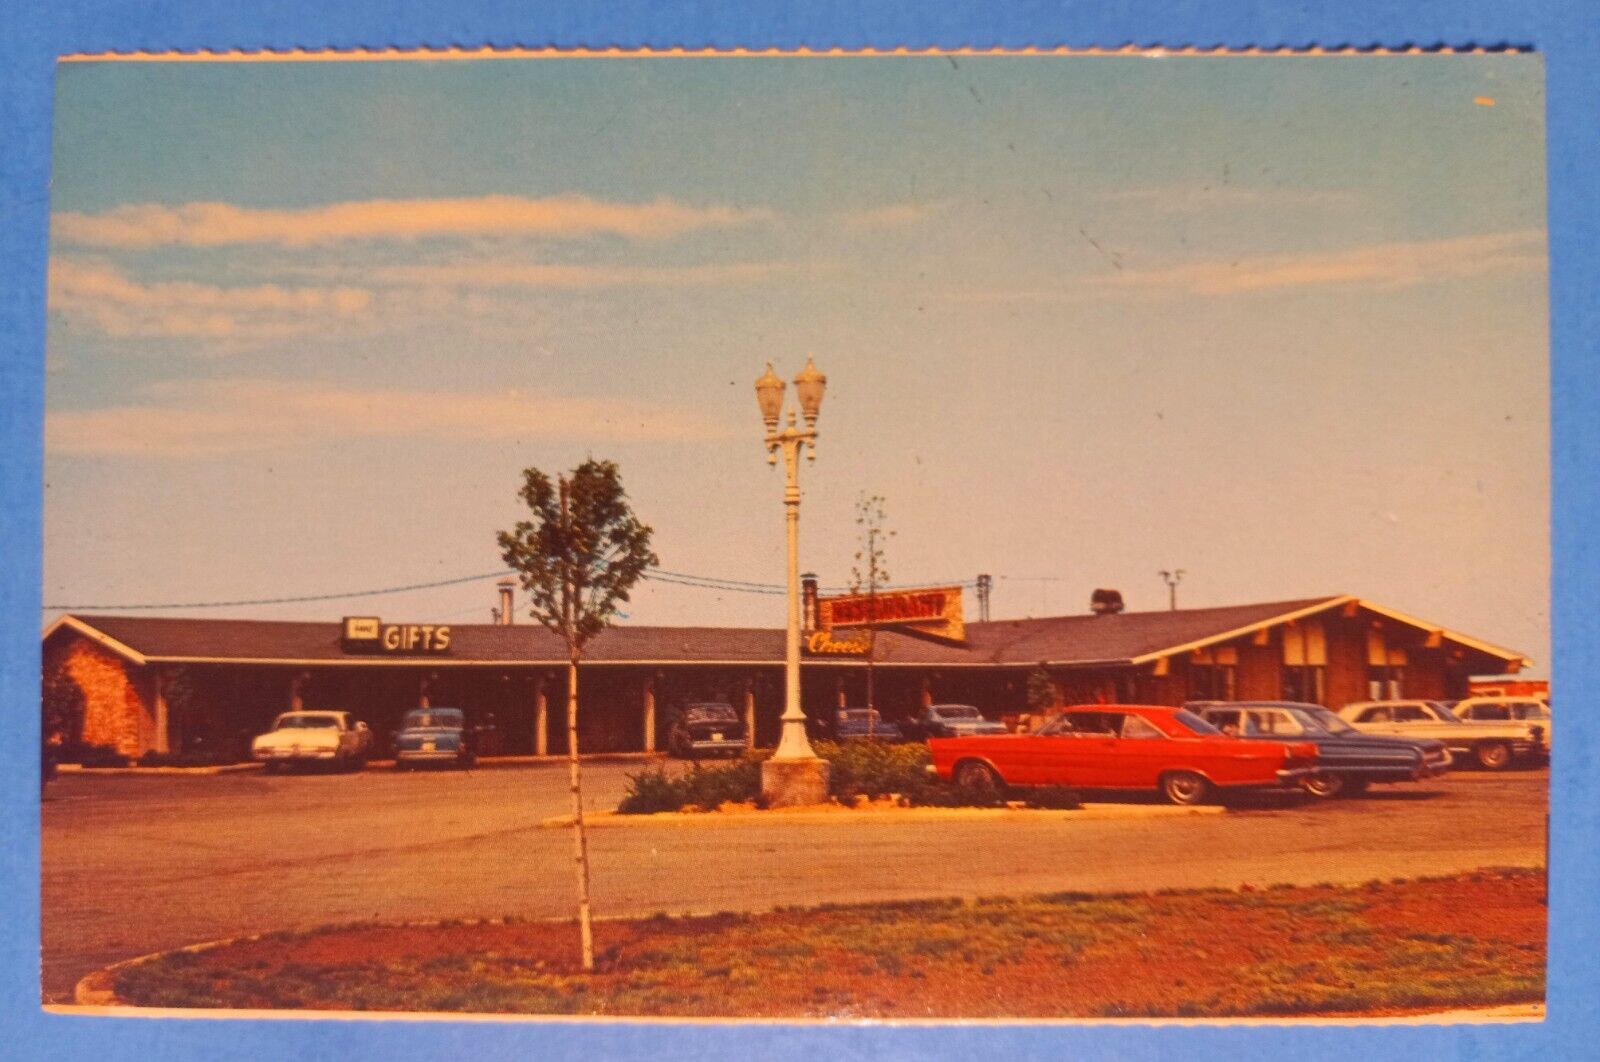 Oasis Gift Shop Restaurant Diner JANESVILLE WI Wisconsin Vintage Postcard